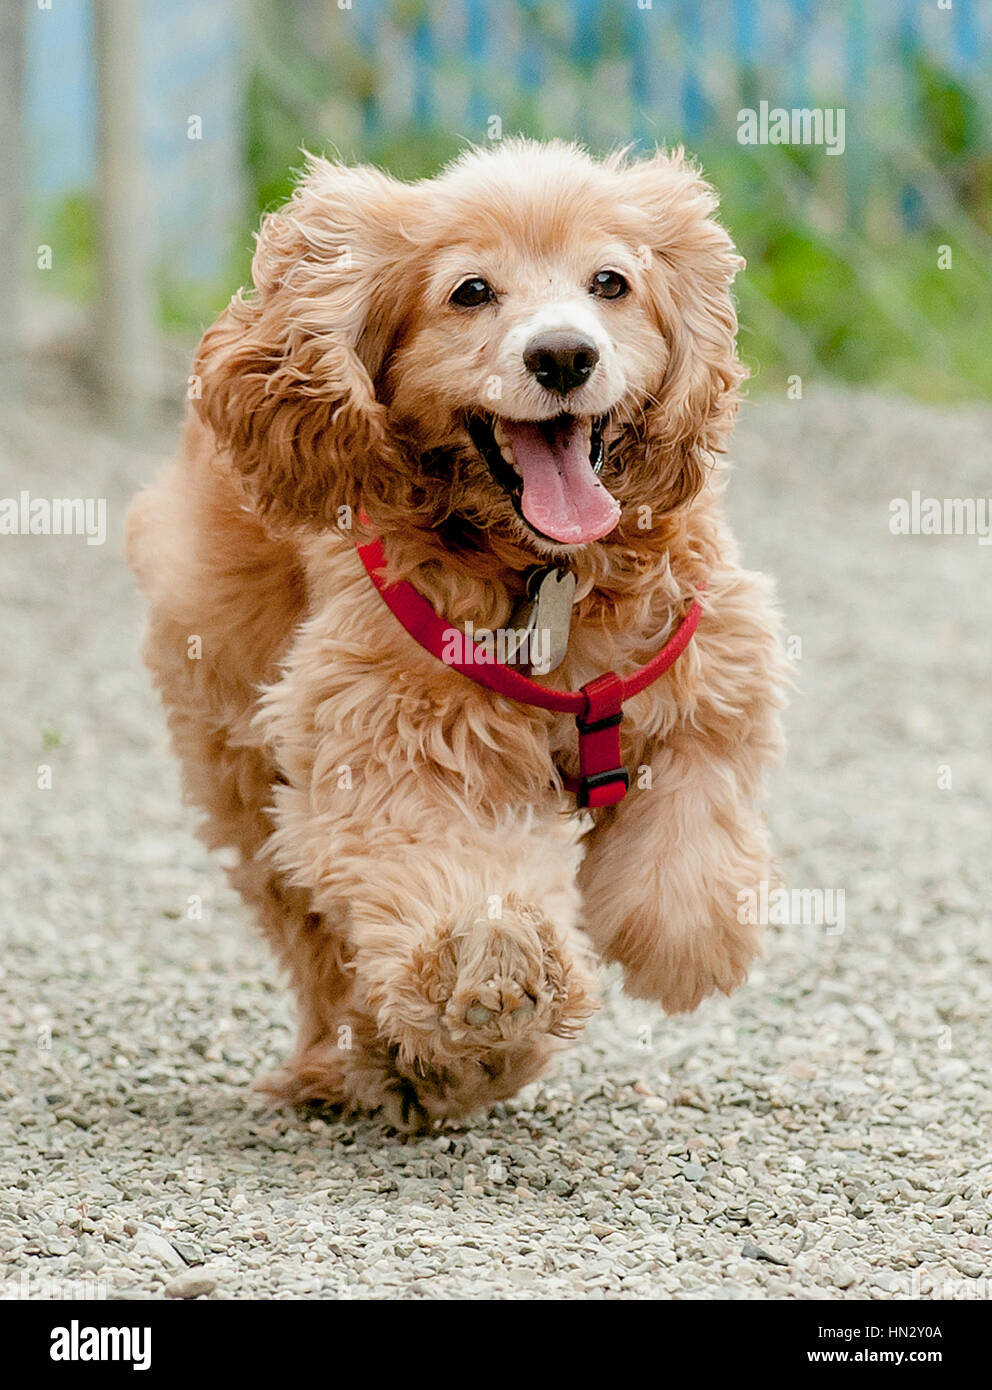 Giovane sano felice non rifinito cocker cane spaniel marrone che indossa l'imbracatura rossa che corre verso la macchina fotografica da terra Foto Stock